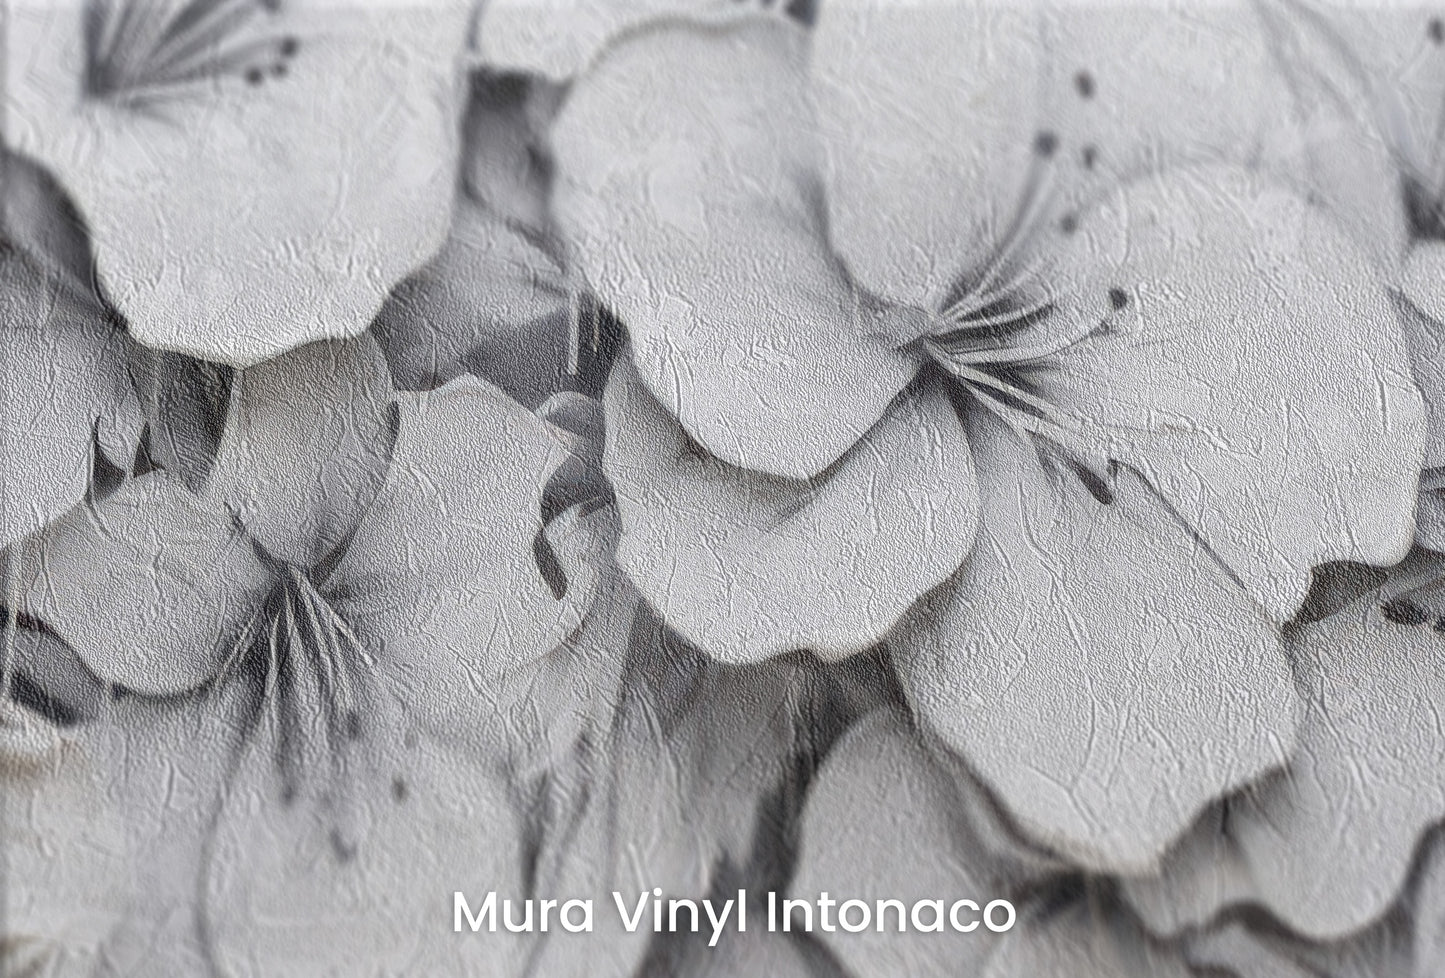 Zbliżenie na artystyczną fototapetę o nazwie CASCADE OF WHITES na podłożu Mura Vinyl Intonaco - struktura tartego tynku.